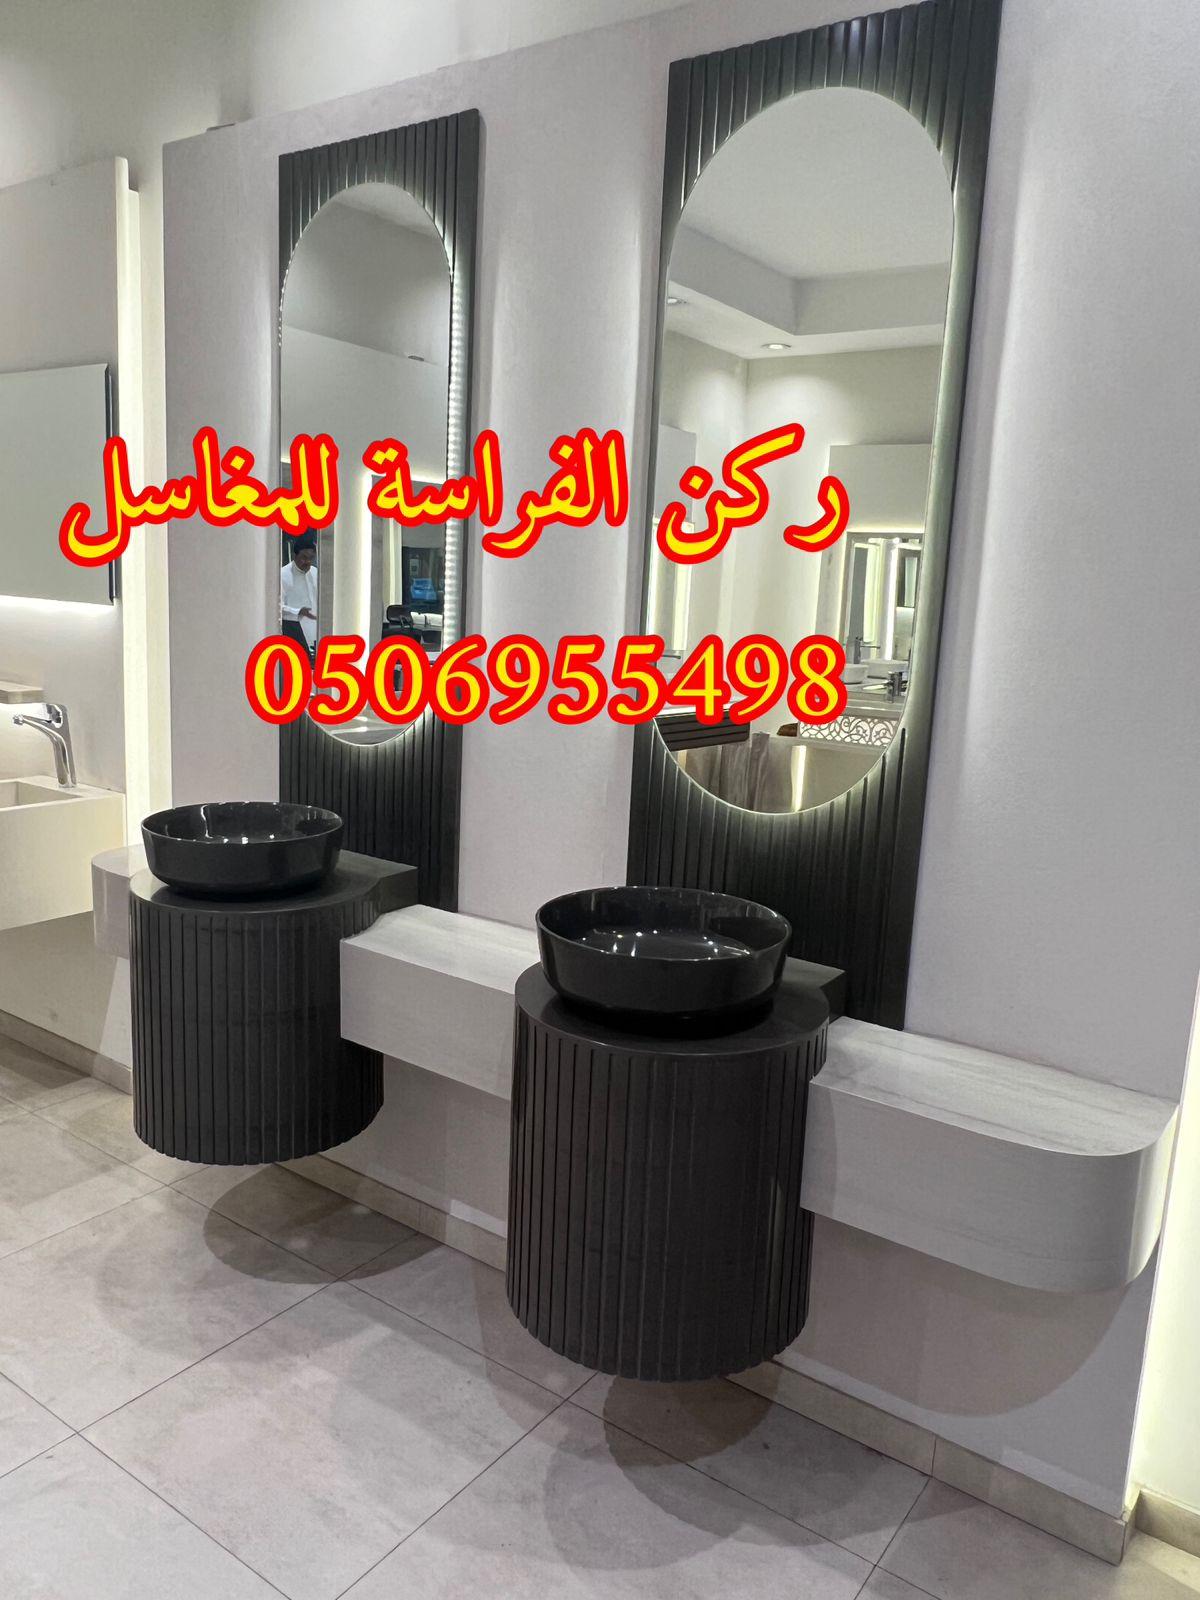 احواض مغاسل رخام في الرياض,0506955498 939389192